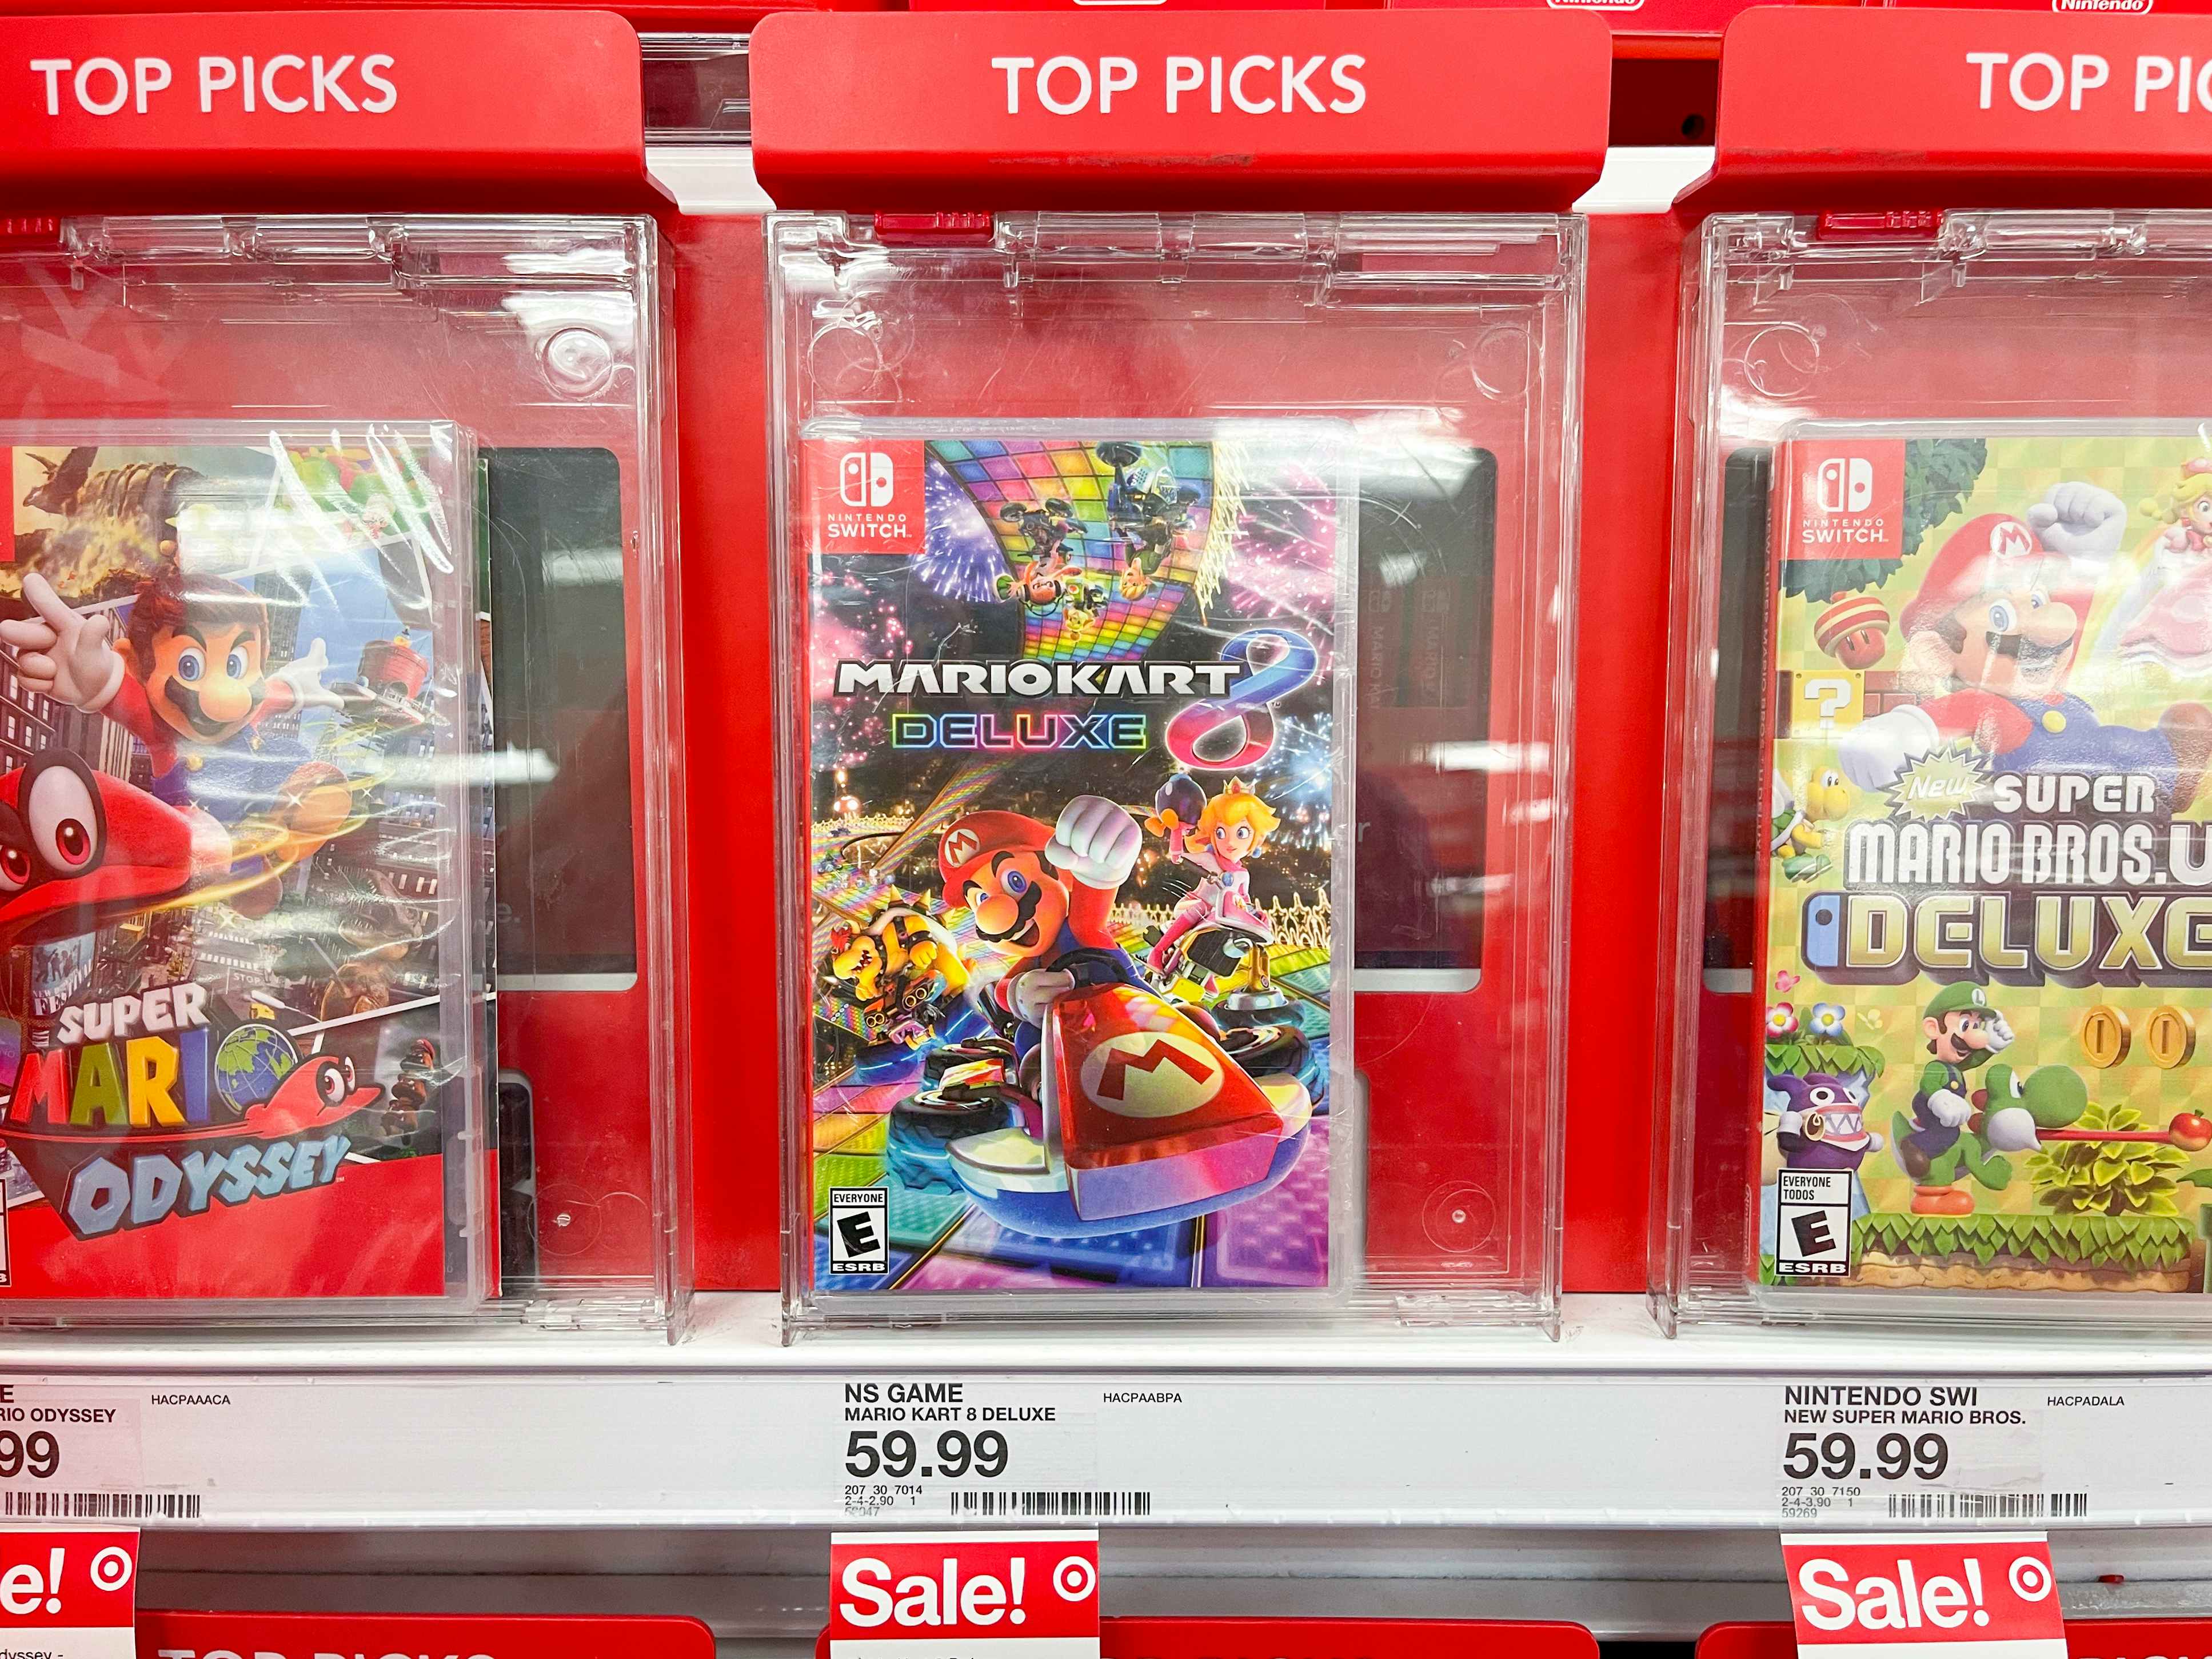 Nintendo Switch Mariokart video games at Target